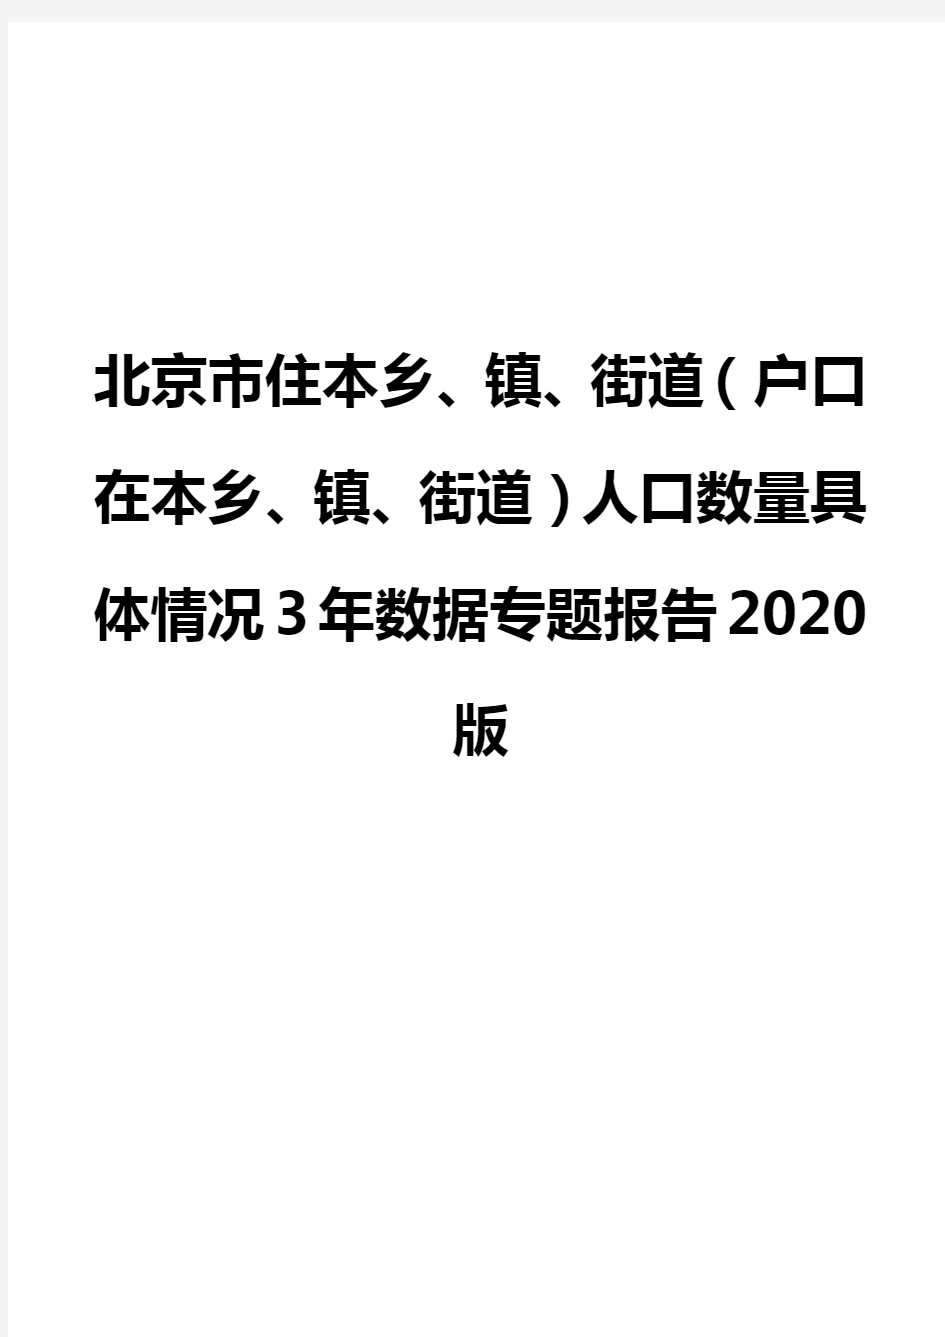 北京市住本乡、镇、街道(户口在本乡、镇、街道)人口数量具体情况3年数据专题报告2020版